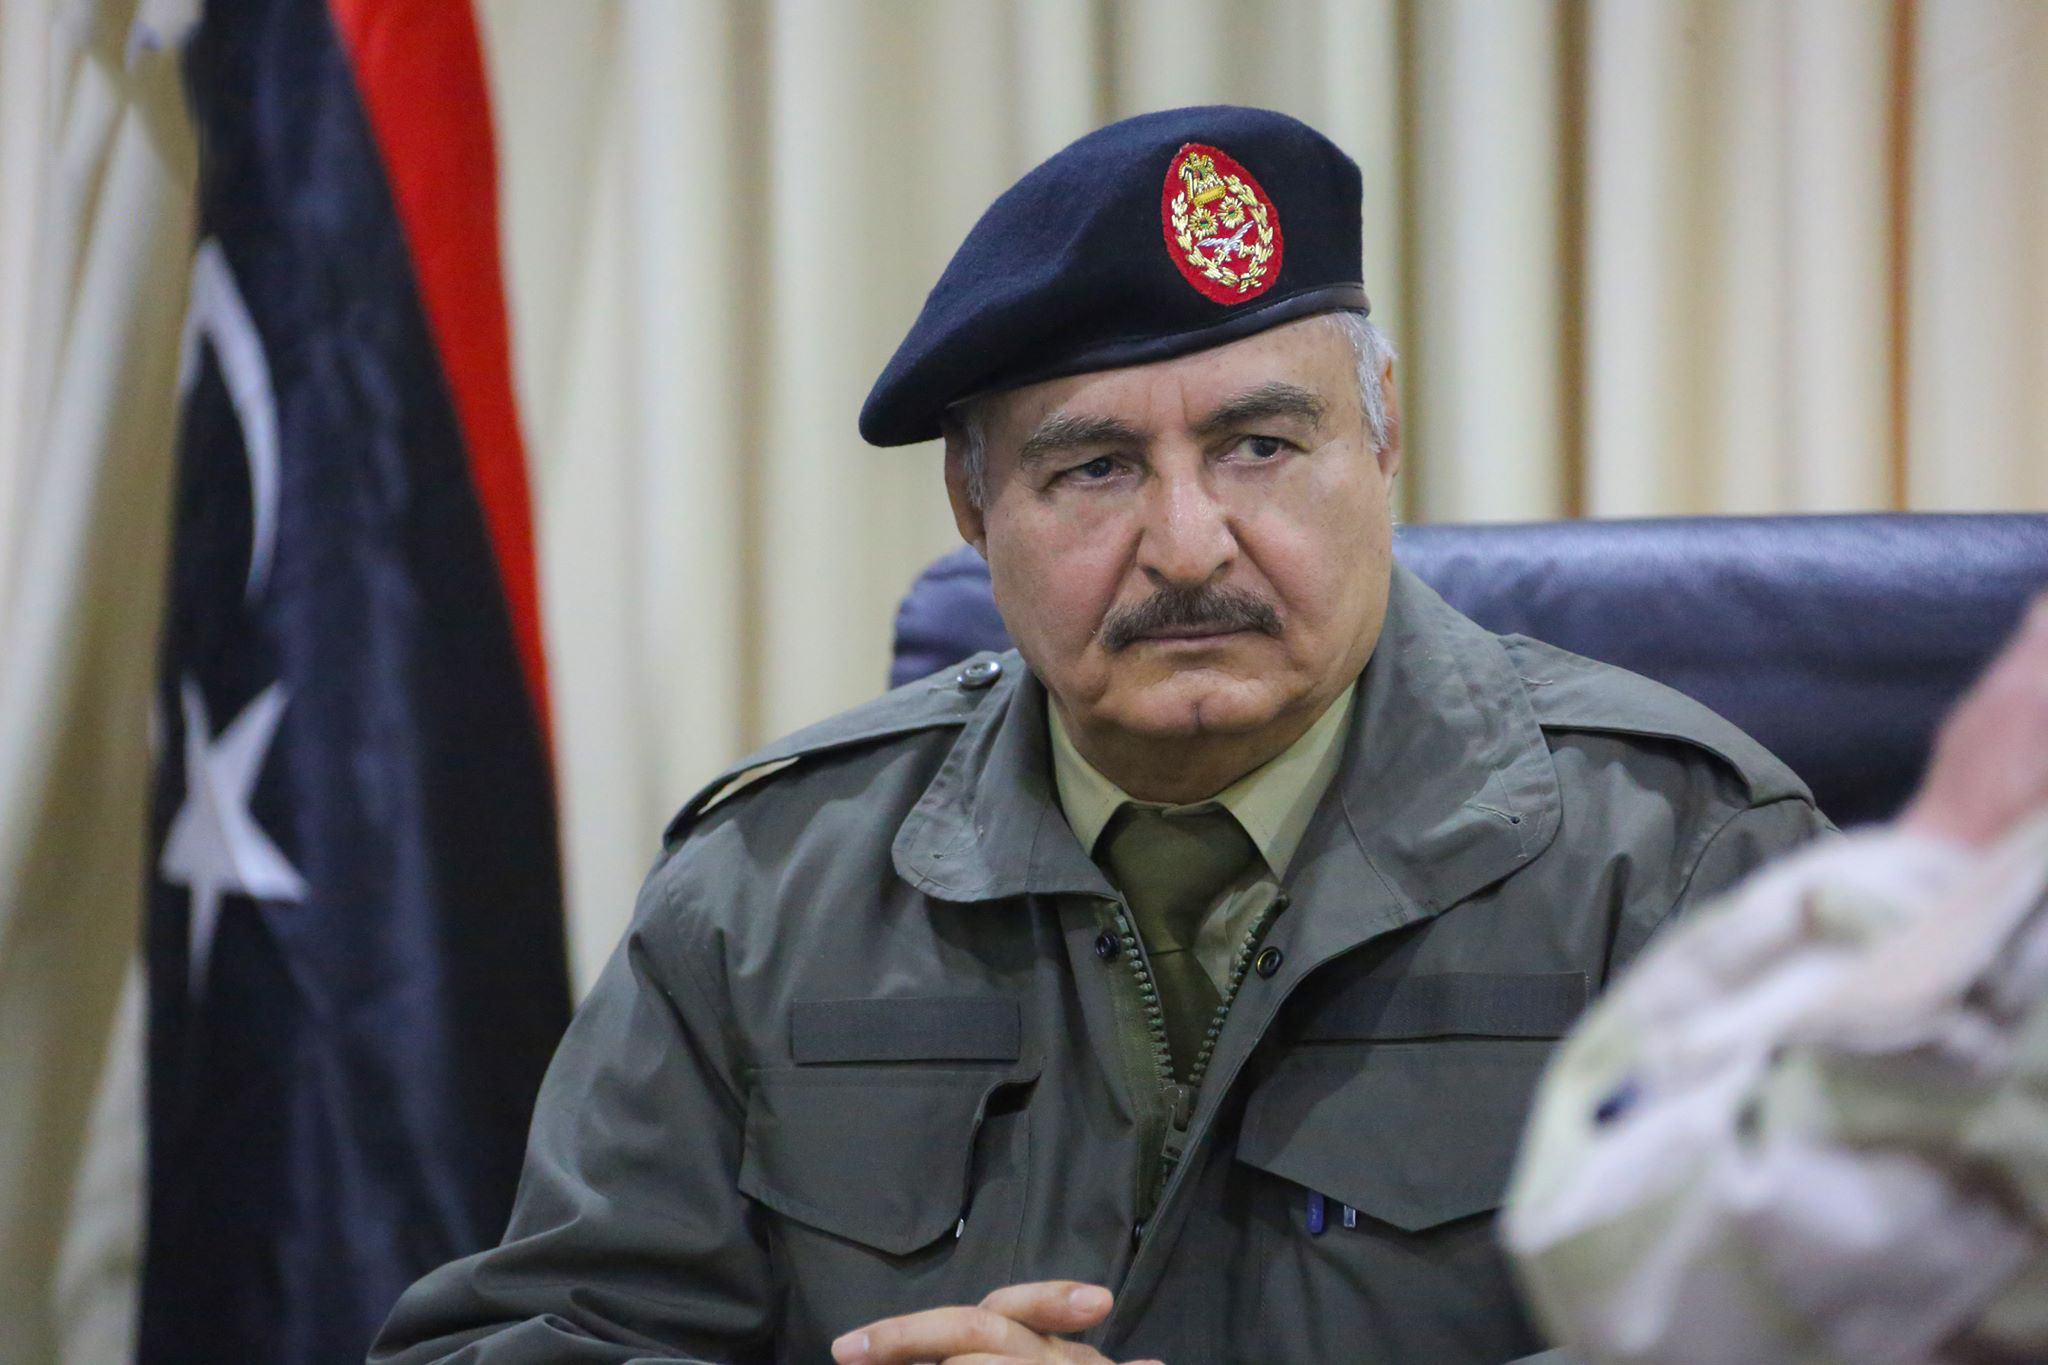   قيادة الجيش الليبى: تركيا لم ولن تتوقف عن تصدير شحنات الأسلحة إلى ليبيا